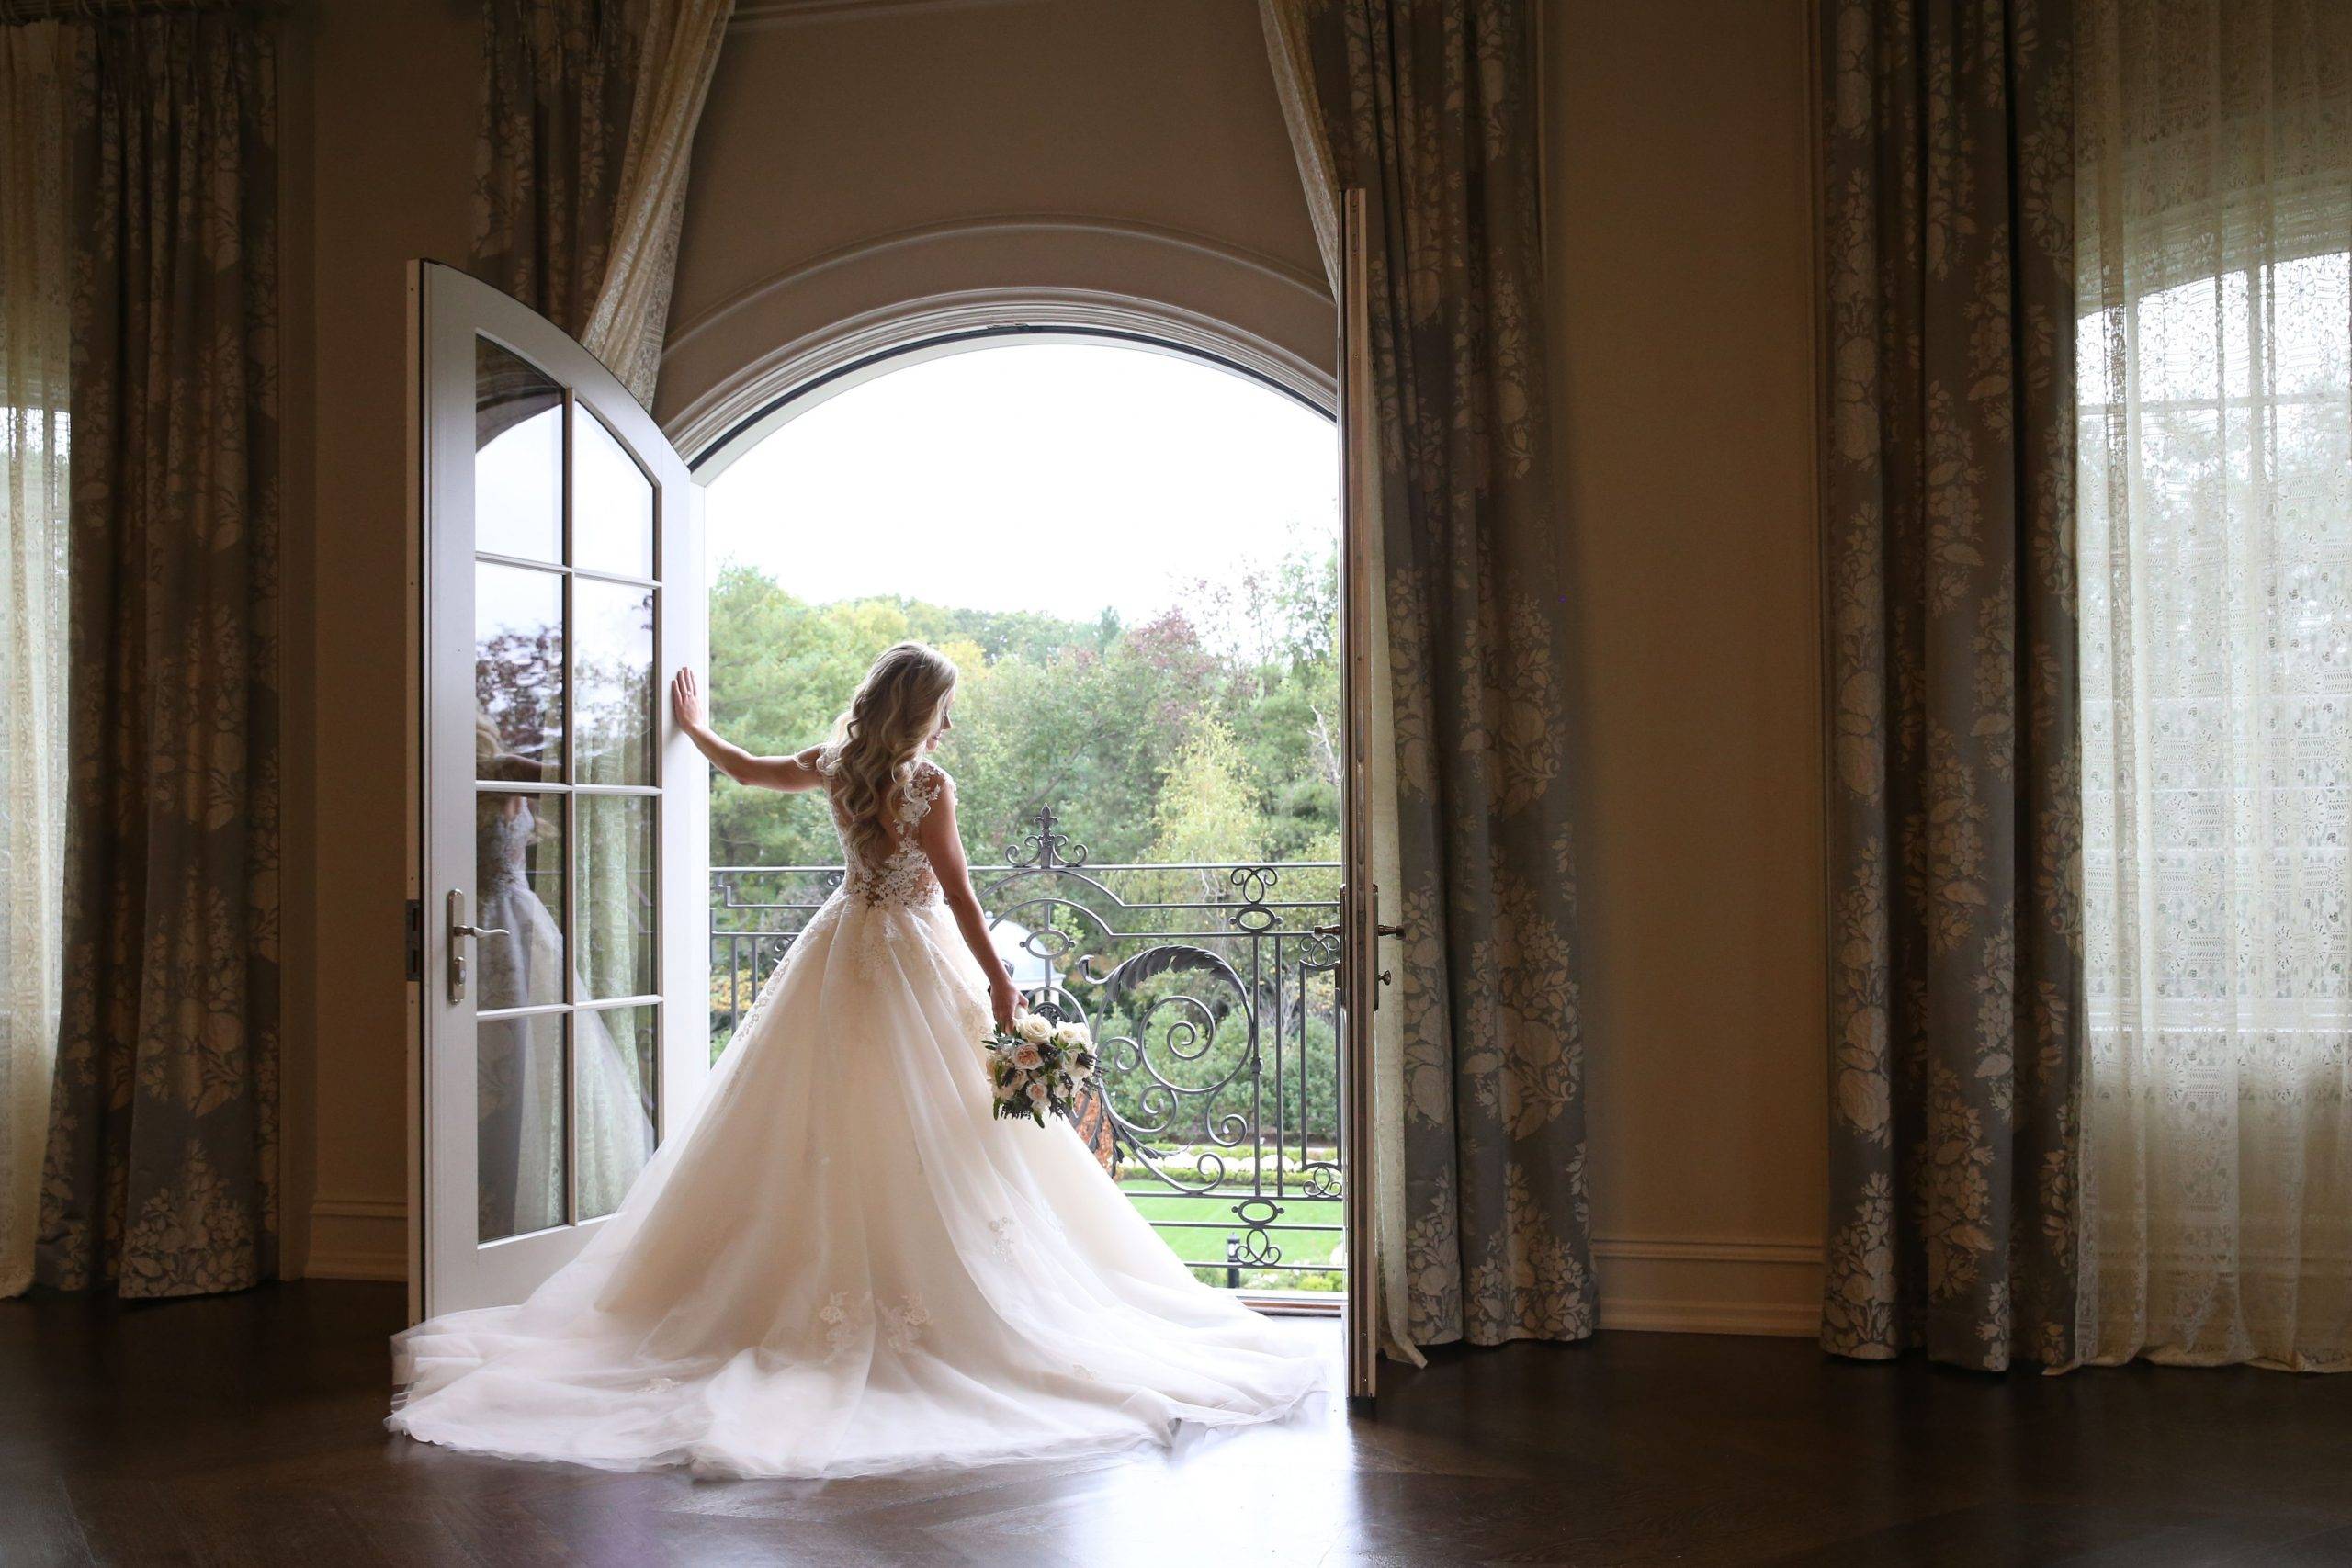 A bride in a wedding dress standing in front of an open door.